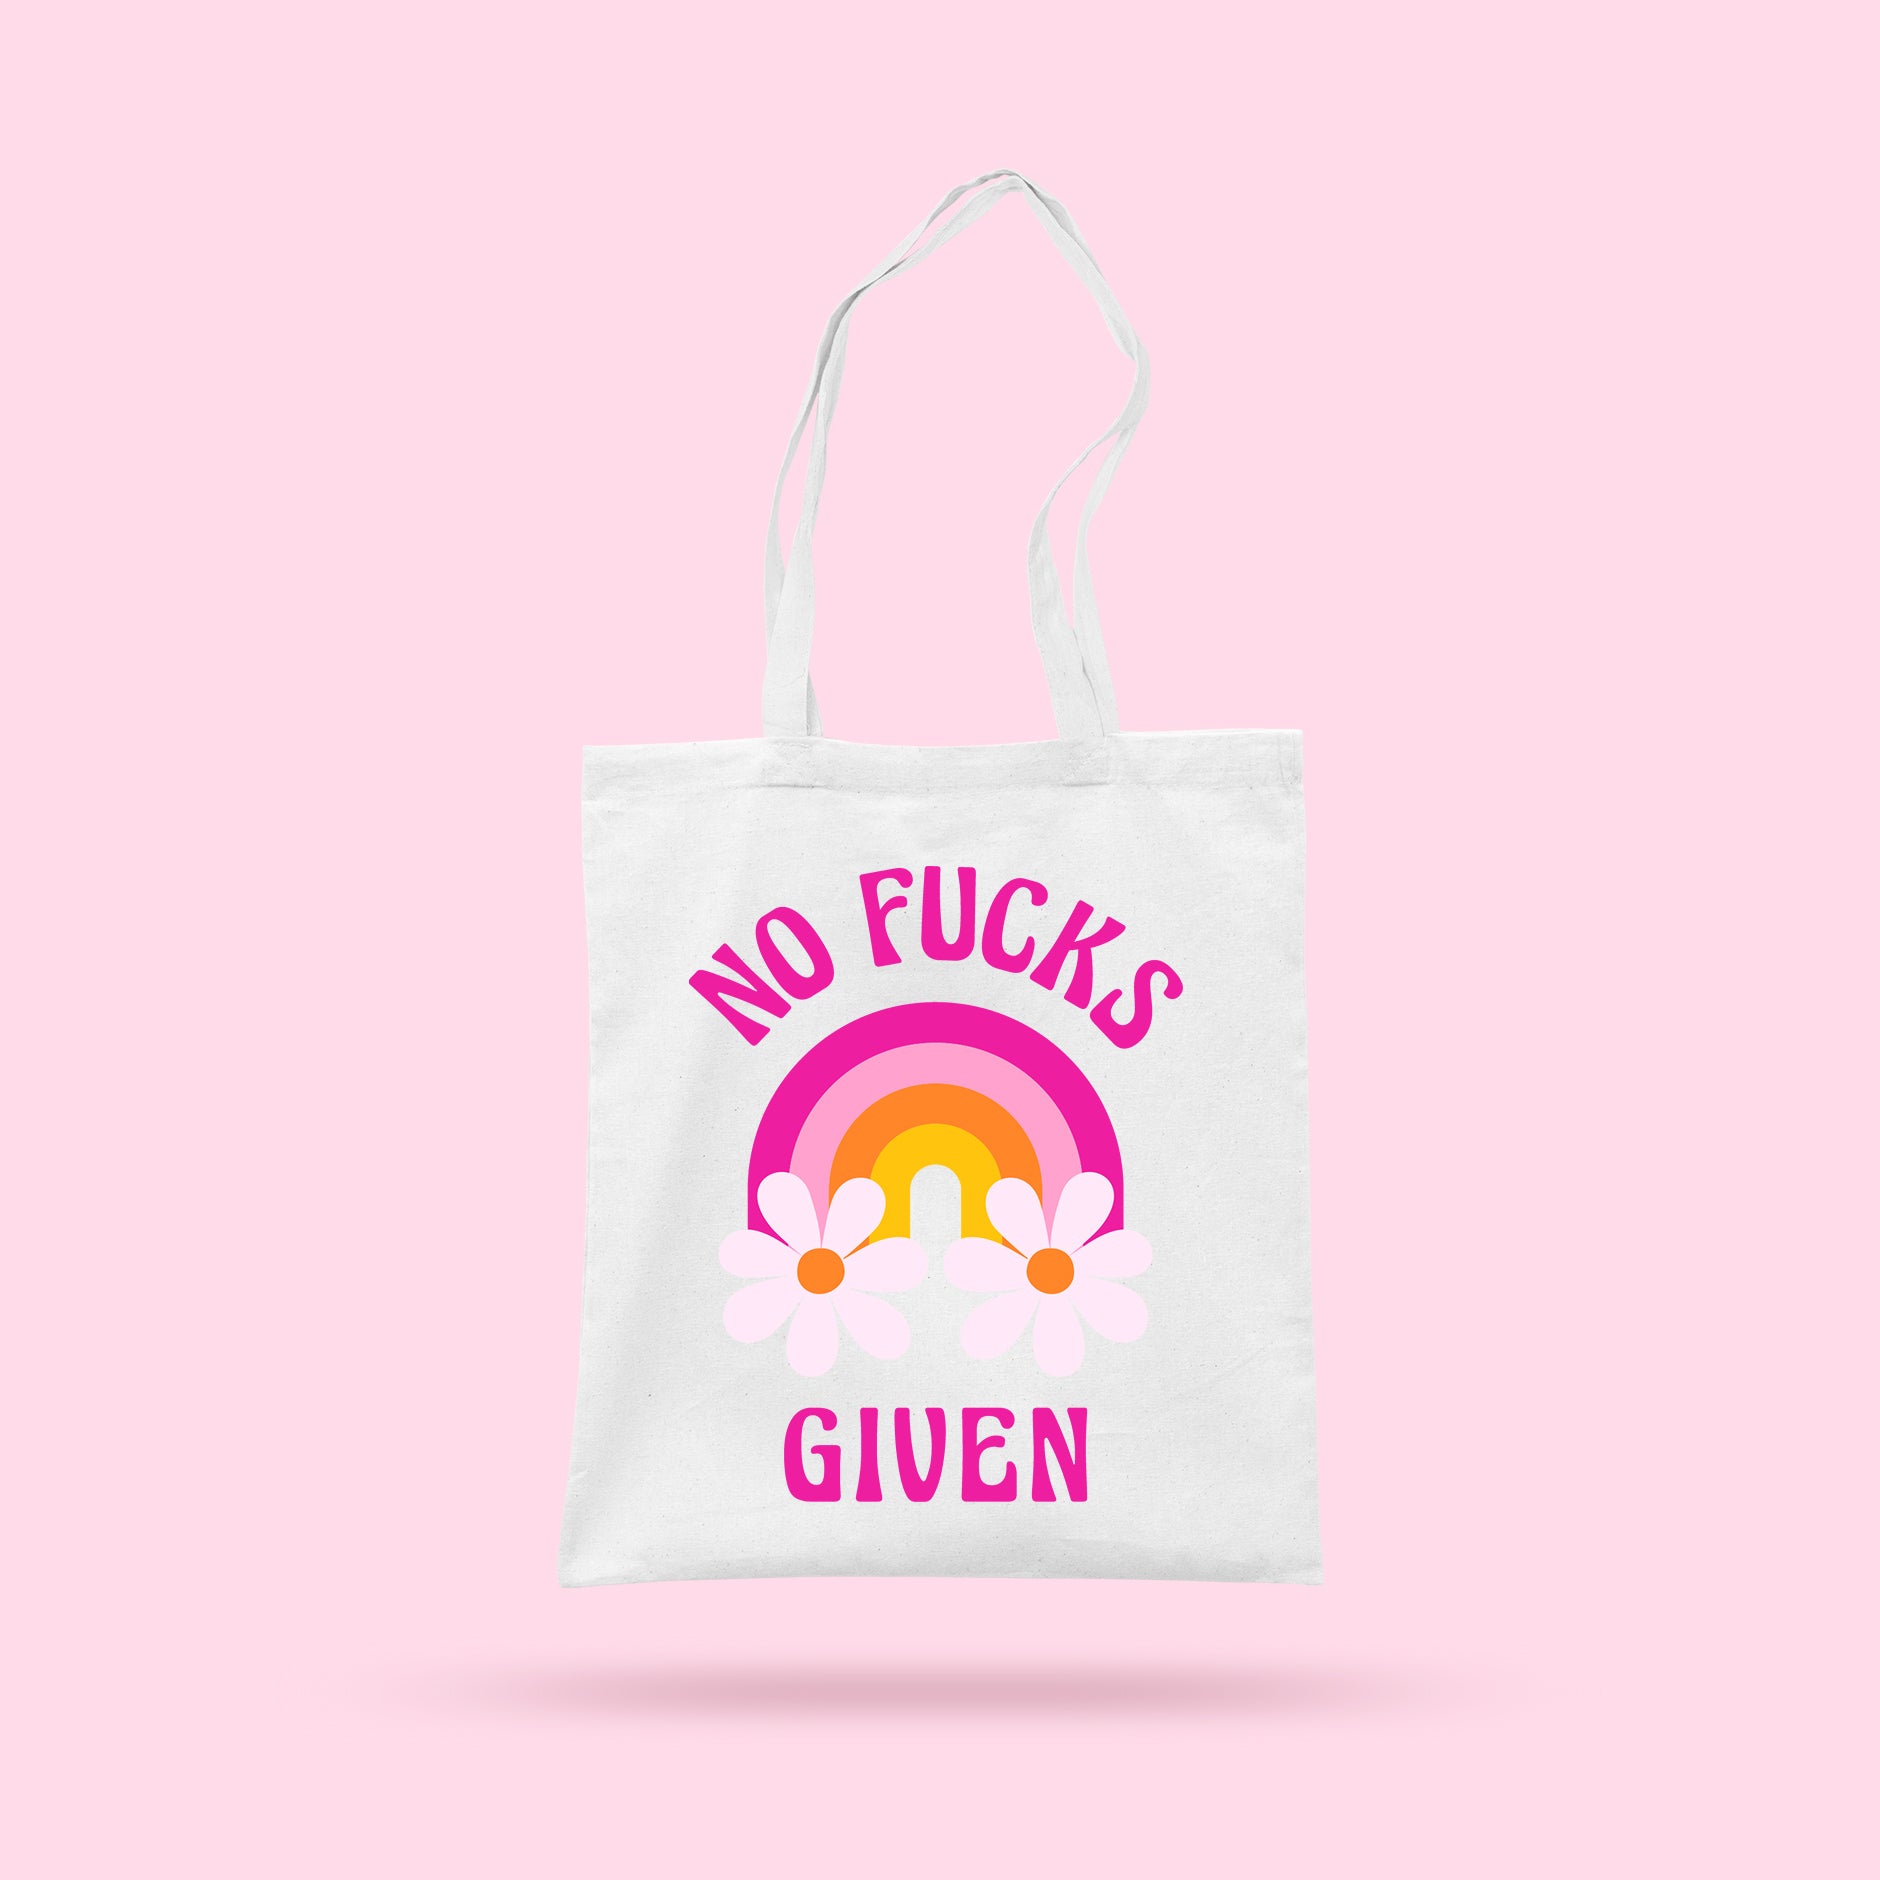 No Fucks Given Tote Bag